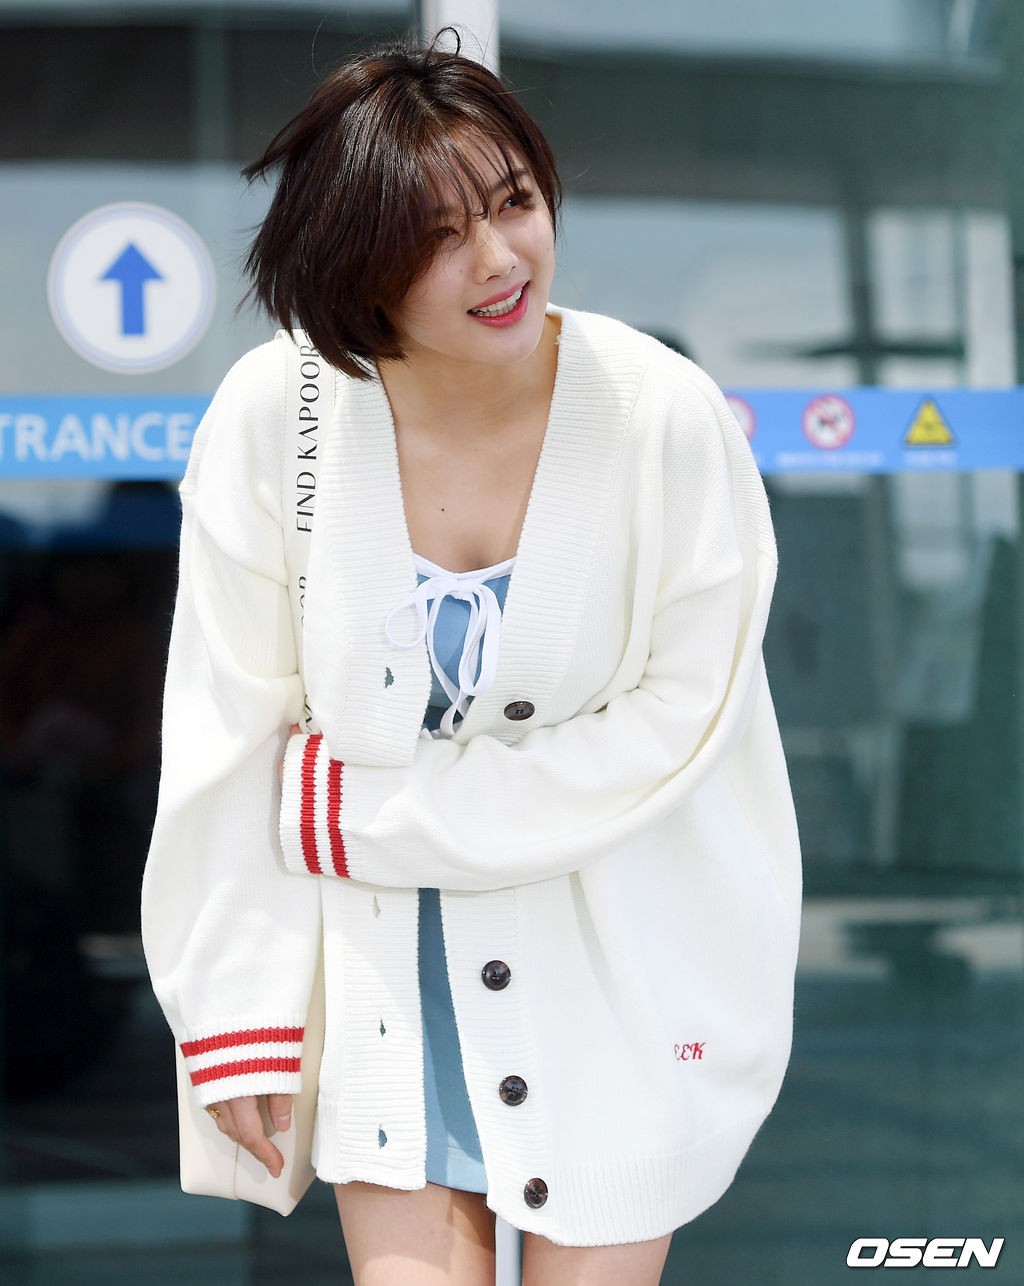 Sao nhí một thời Kim Yoo Jung quá xinh sau khi cắt tóc, Song Hye Kyo gây chú ý vì liên tục che bụng tại sân bay - Ảnh 8.